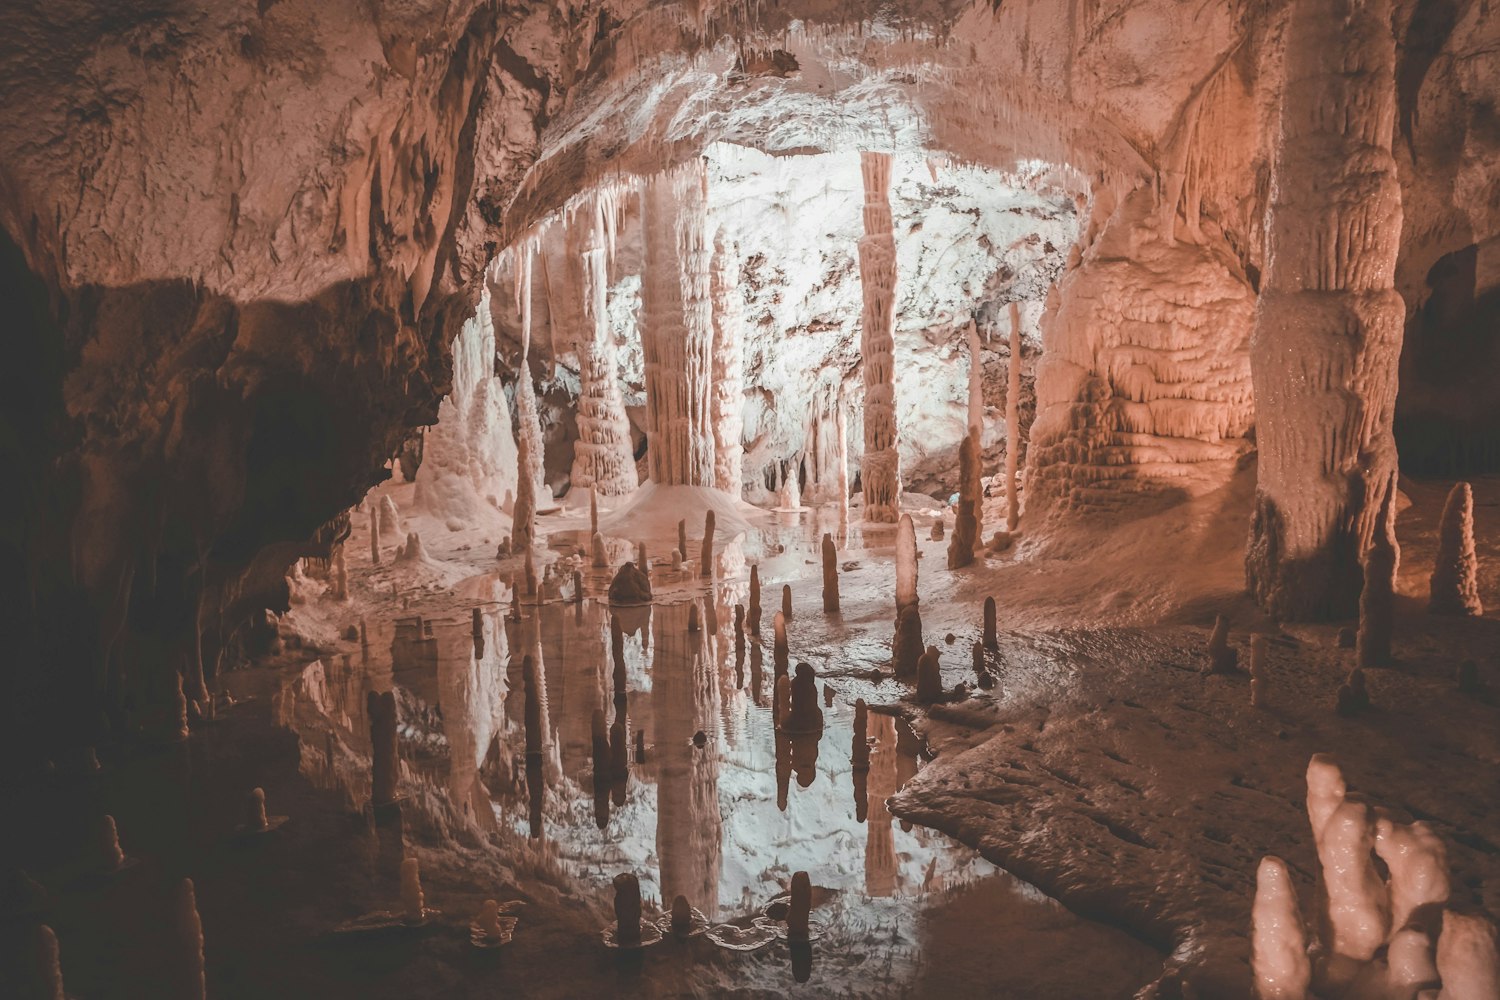 De kegels in de grotten van Frasassi